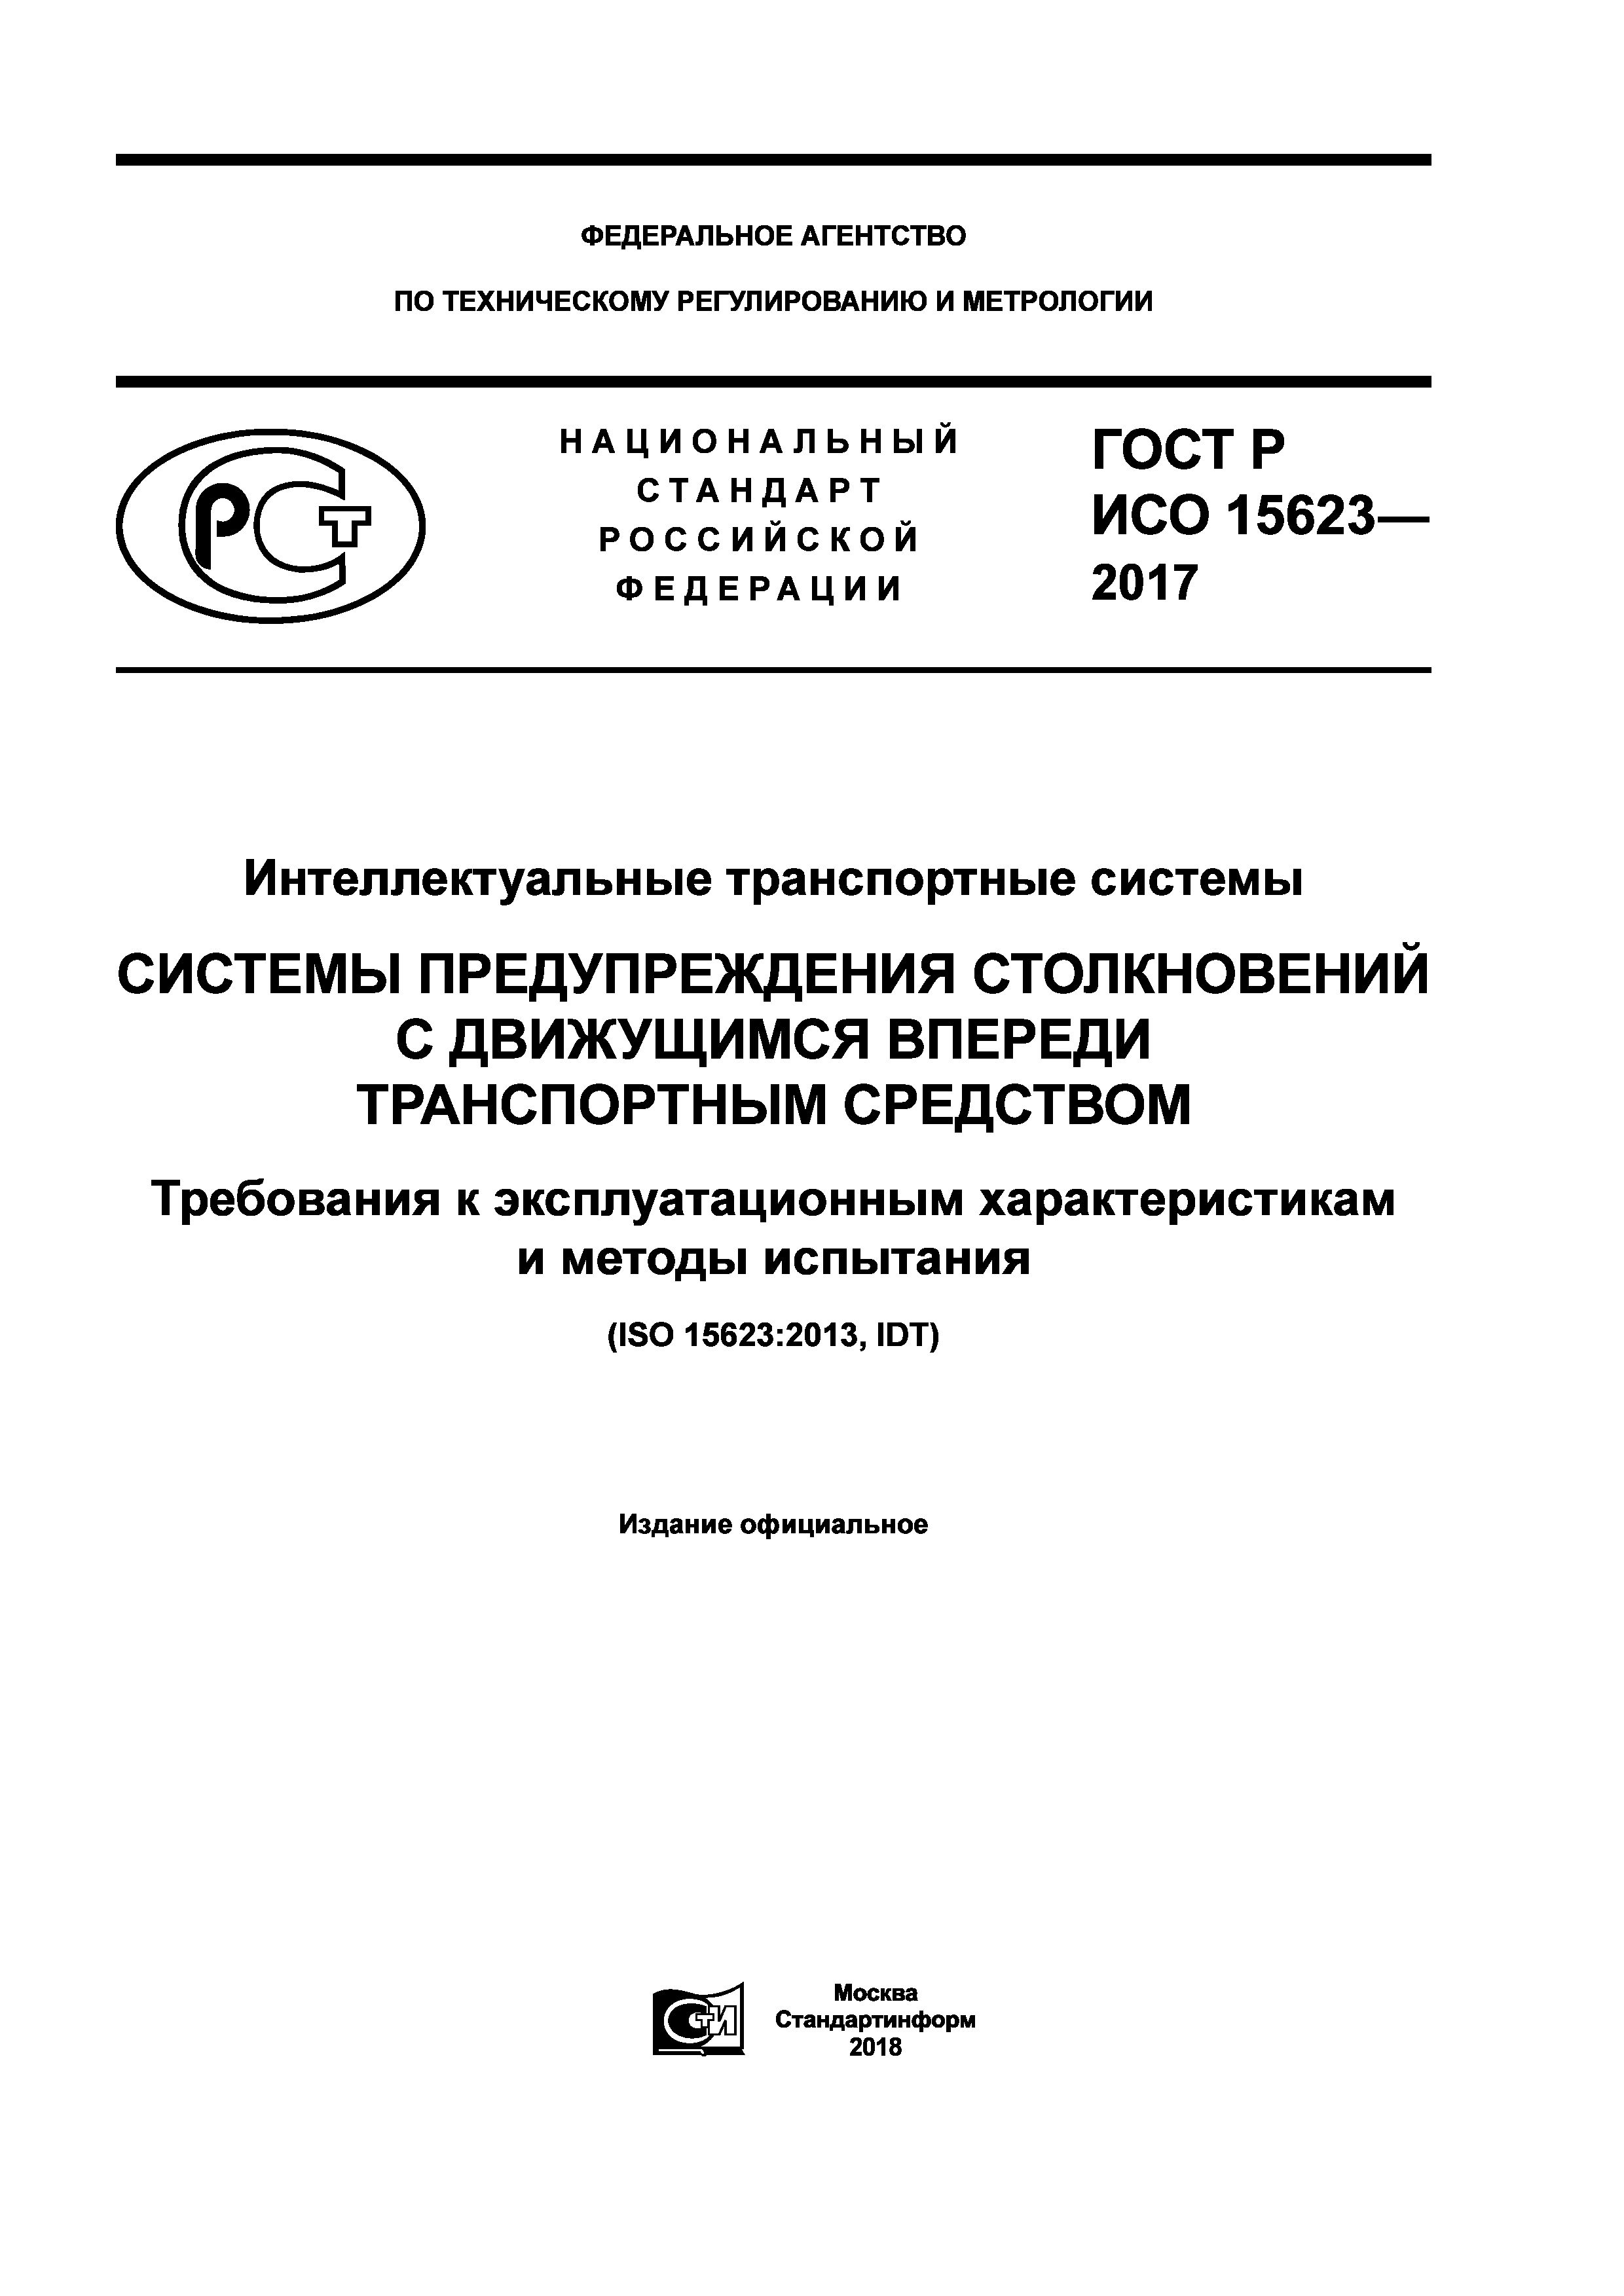 ГОСТ Р ИСО 15623-2017